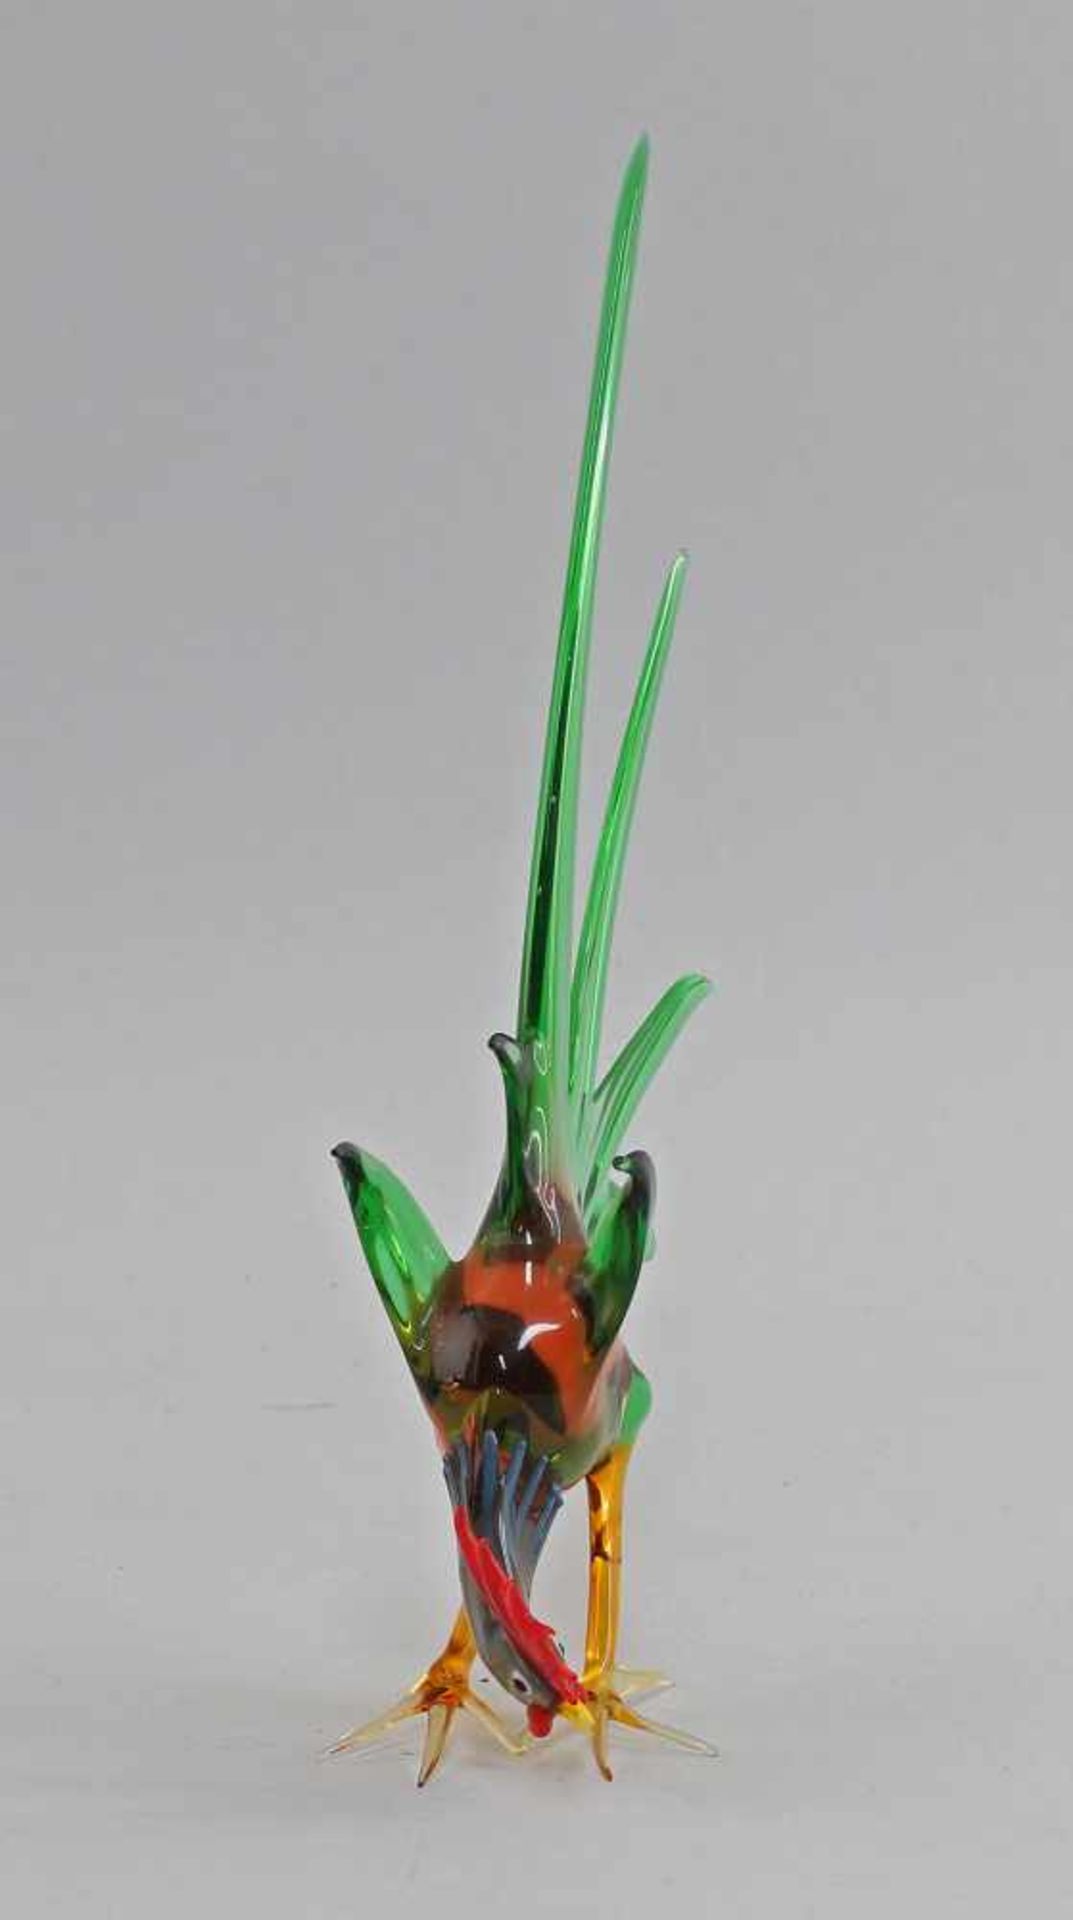 Glasfigur Streit-Hahn Lauschavor der lampe mundgeblasen, aus verschieden farbigem Glas - Bild 2 aus 3